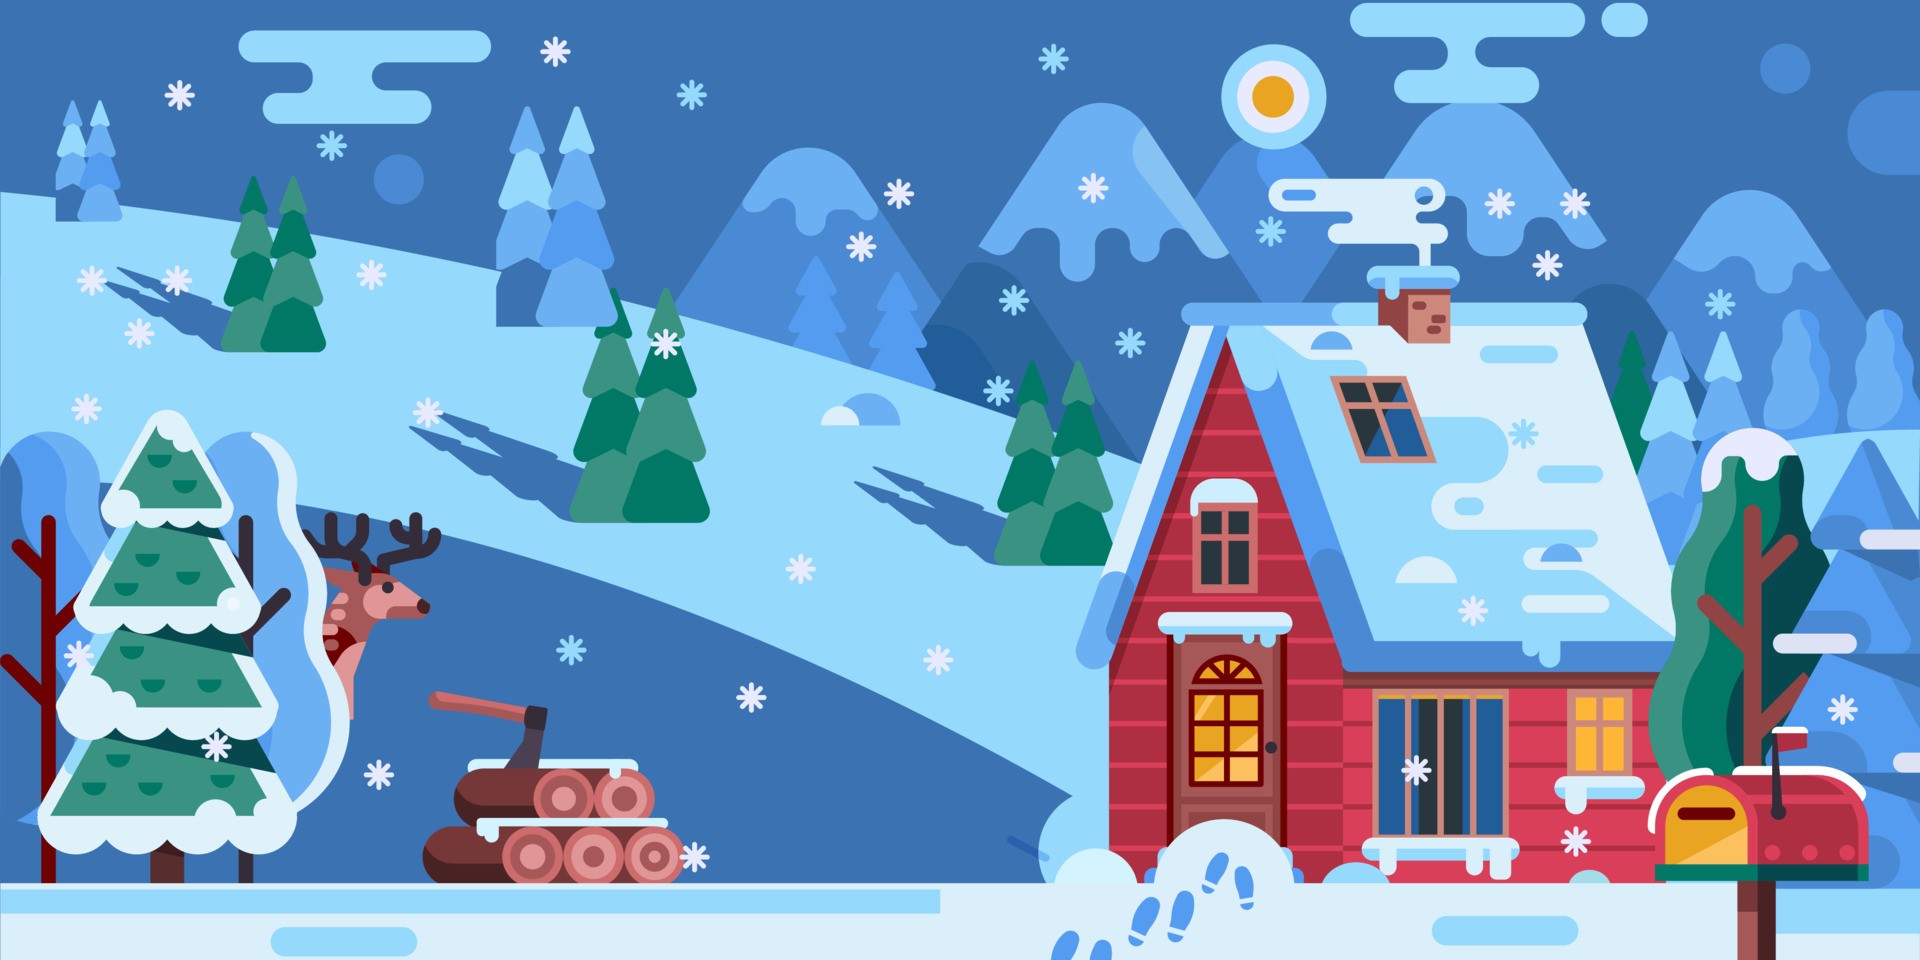 圣诞冬景与小红房插图0